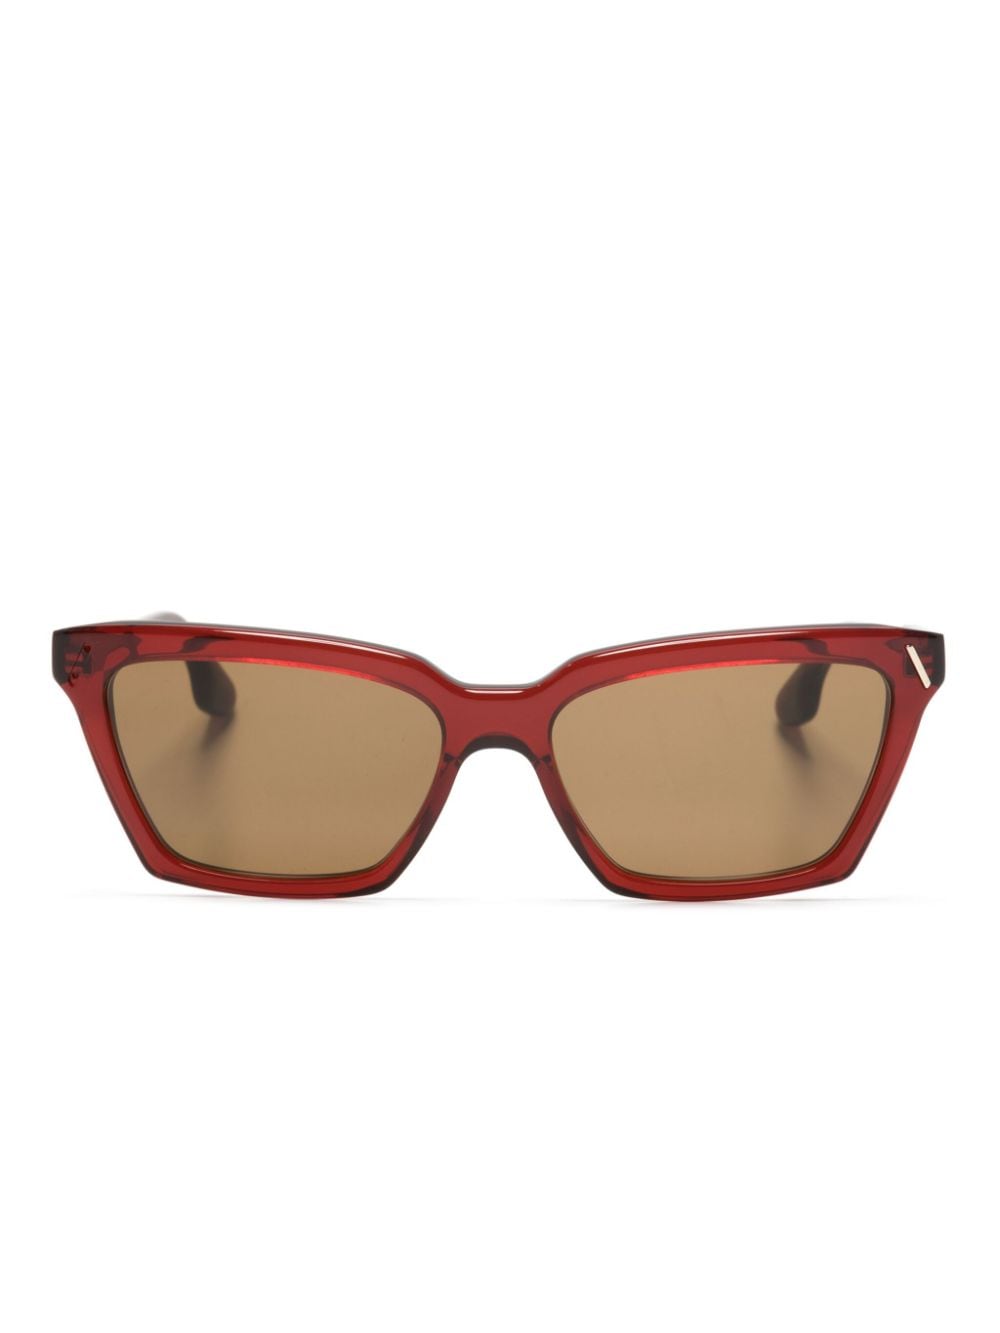 Victoria Beckham Eyewear Sonnenbrille mit Cat-Eye-Gestell - Rot von Victoria Beckham Eyewear